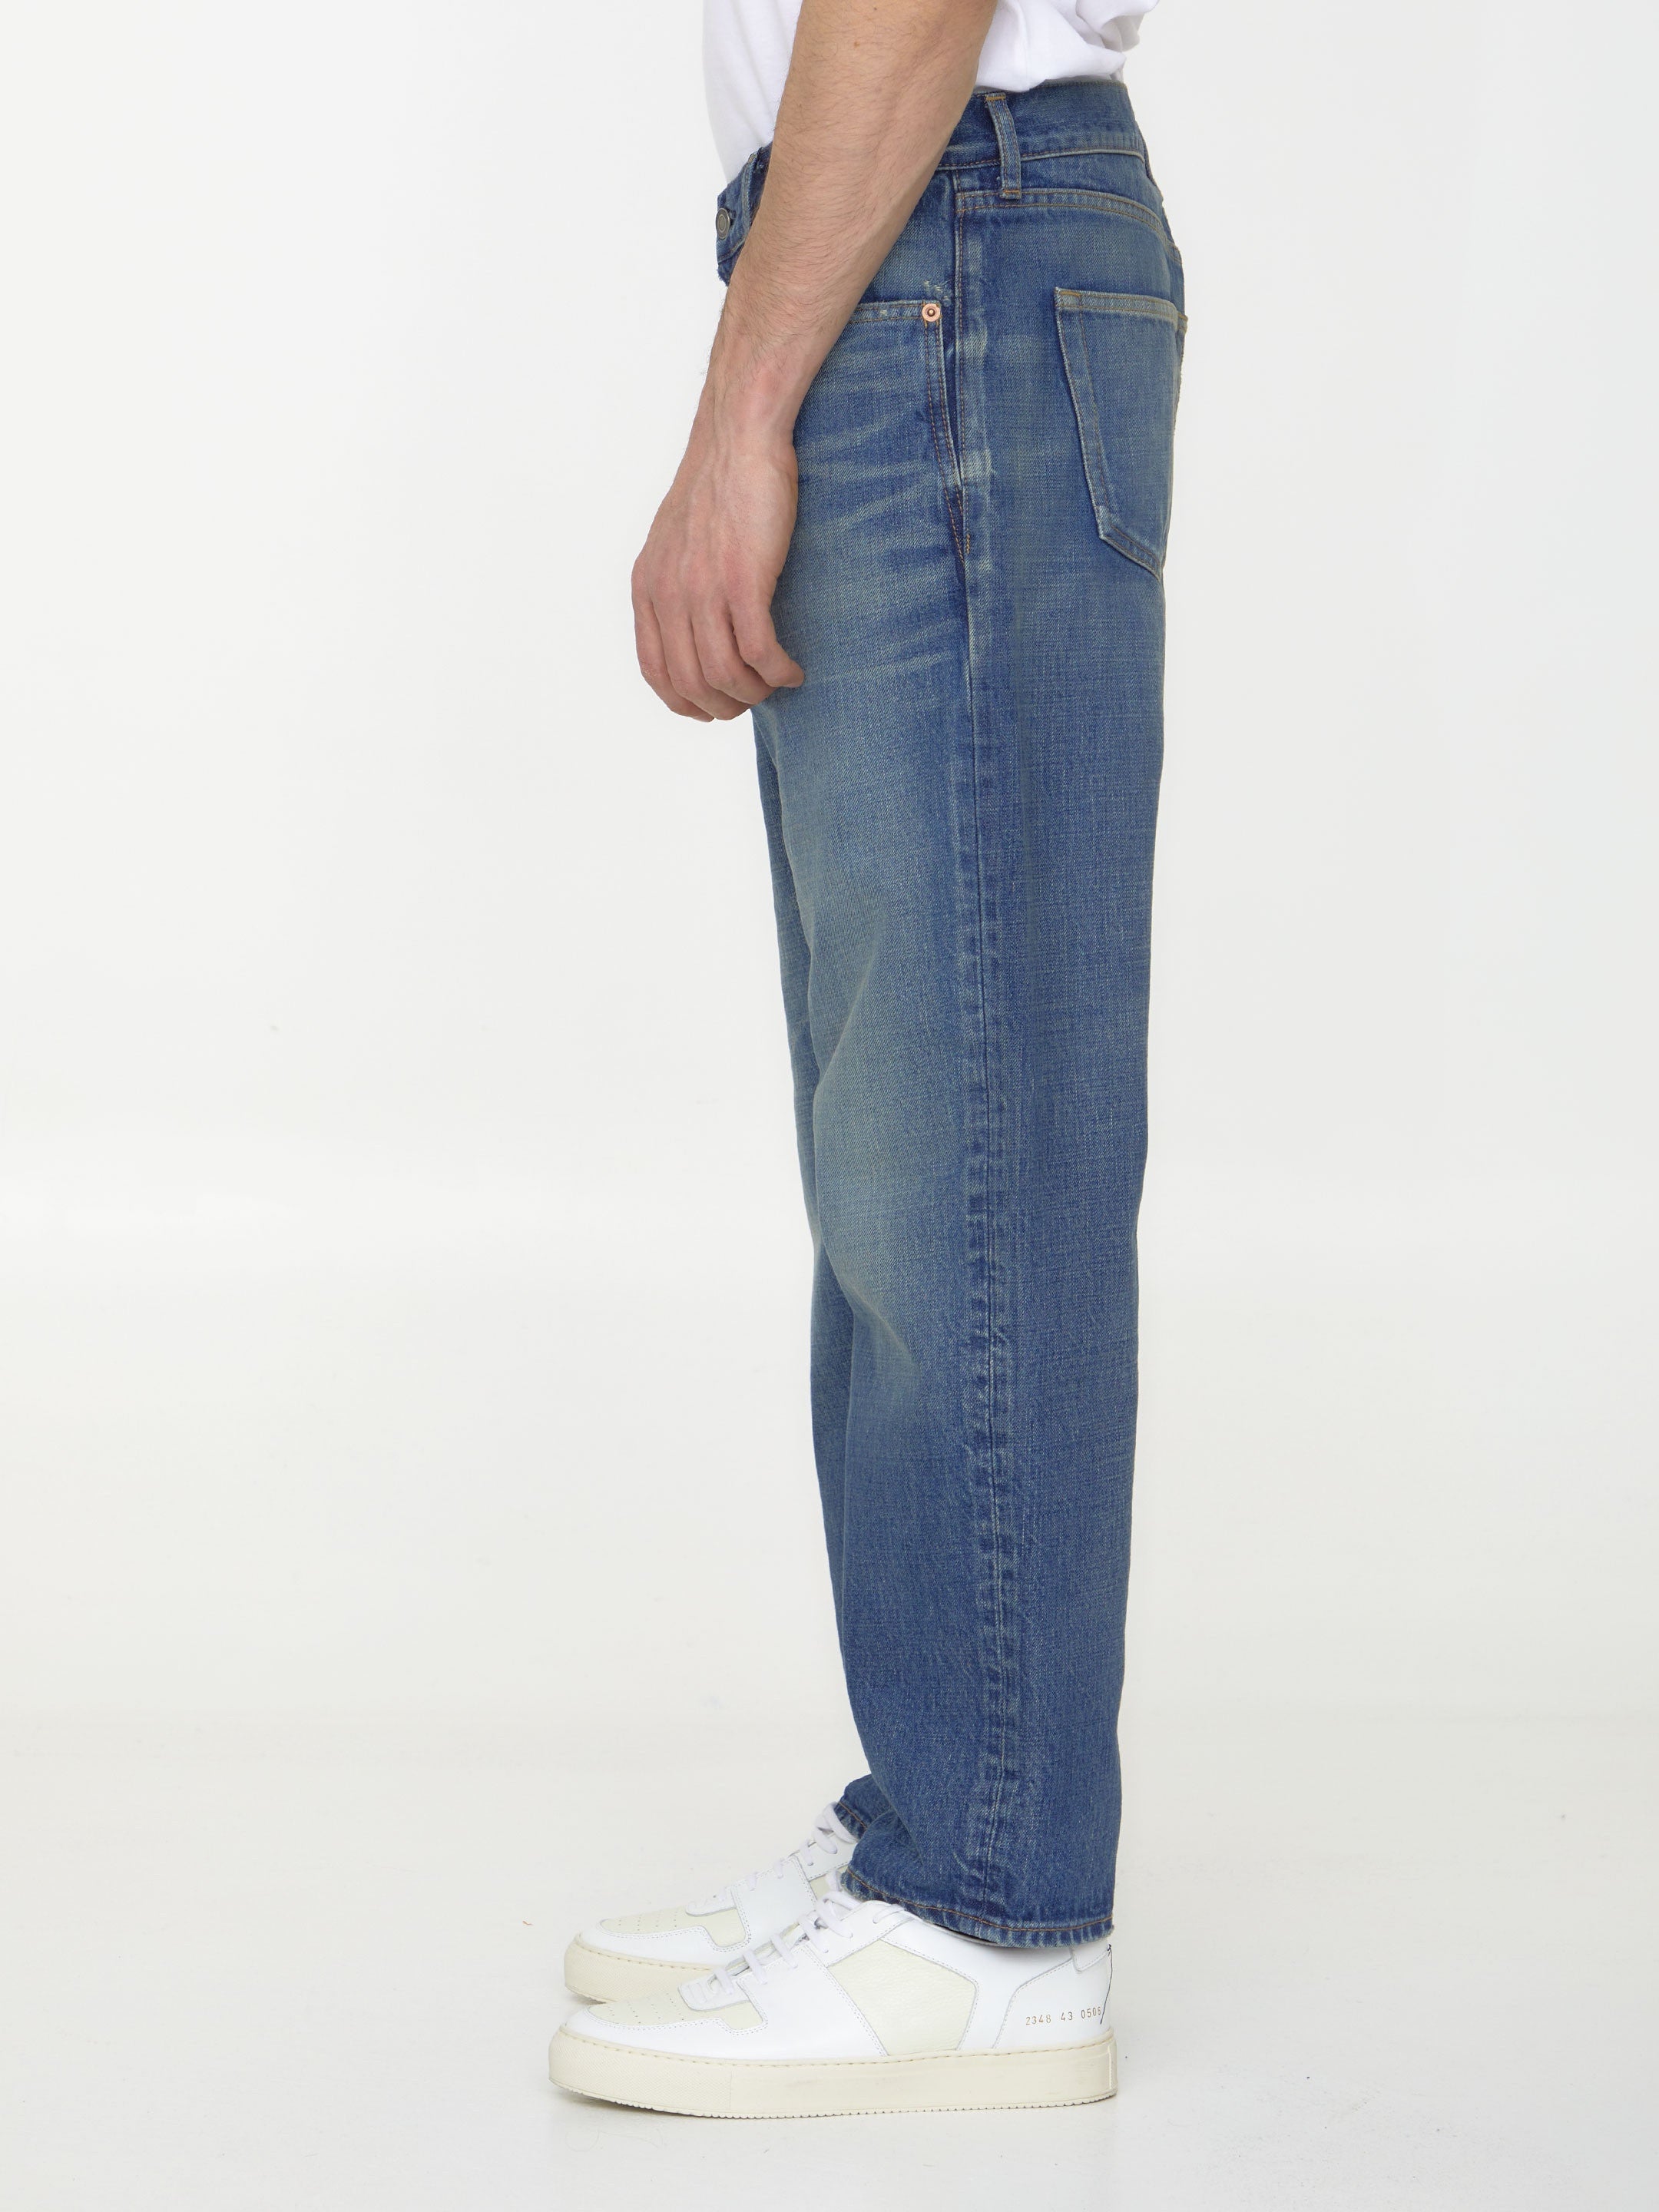 SAINT-LAURENT-OUTLET-SALE-Blue-denim-jeans-Jeans-ARCHIVE-COLLECTION-3.jpg